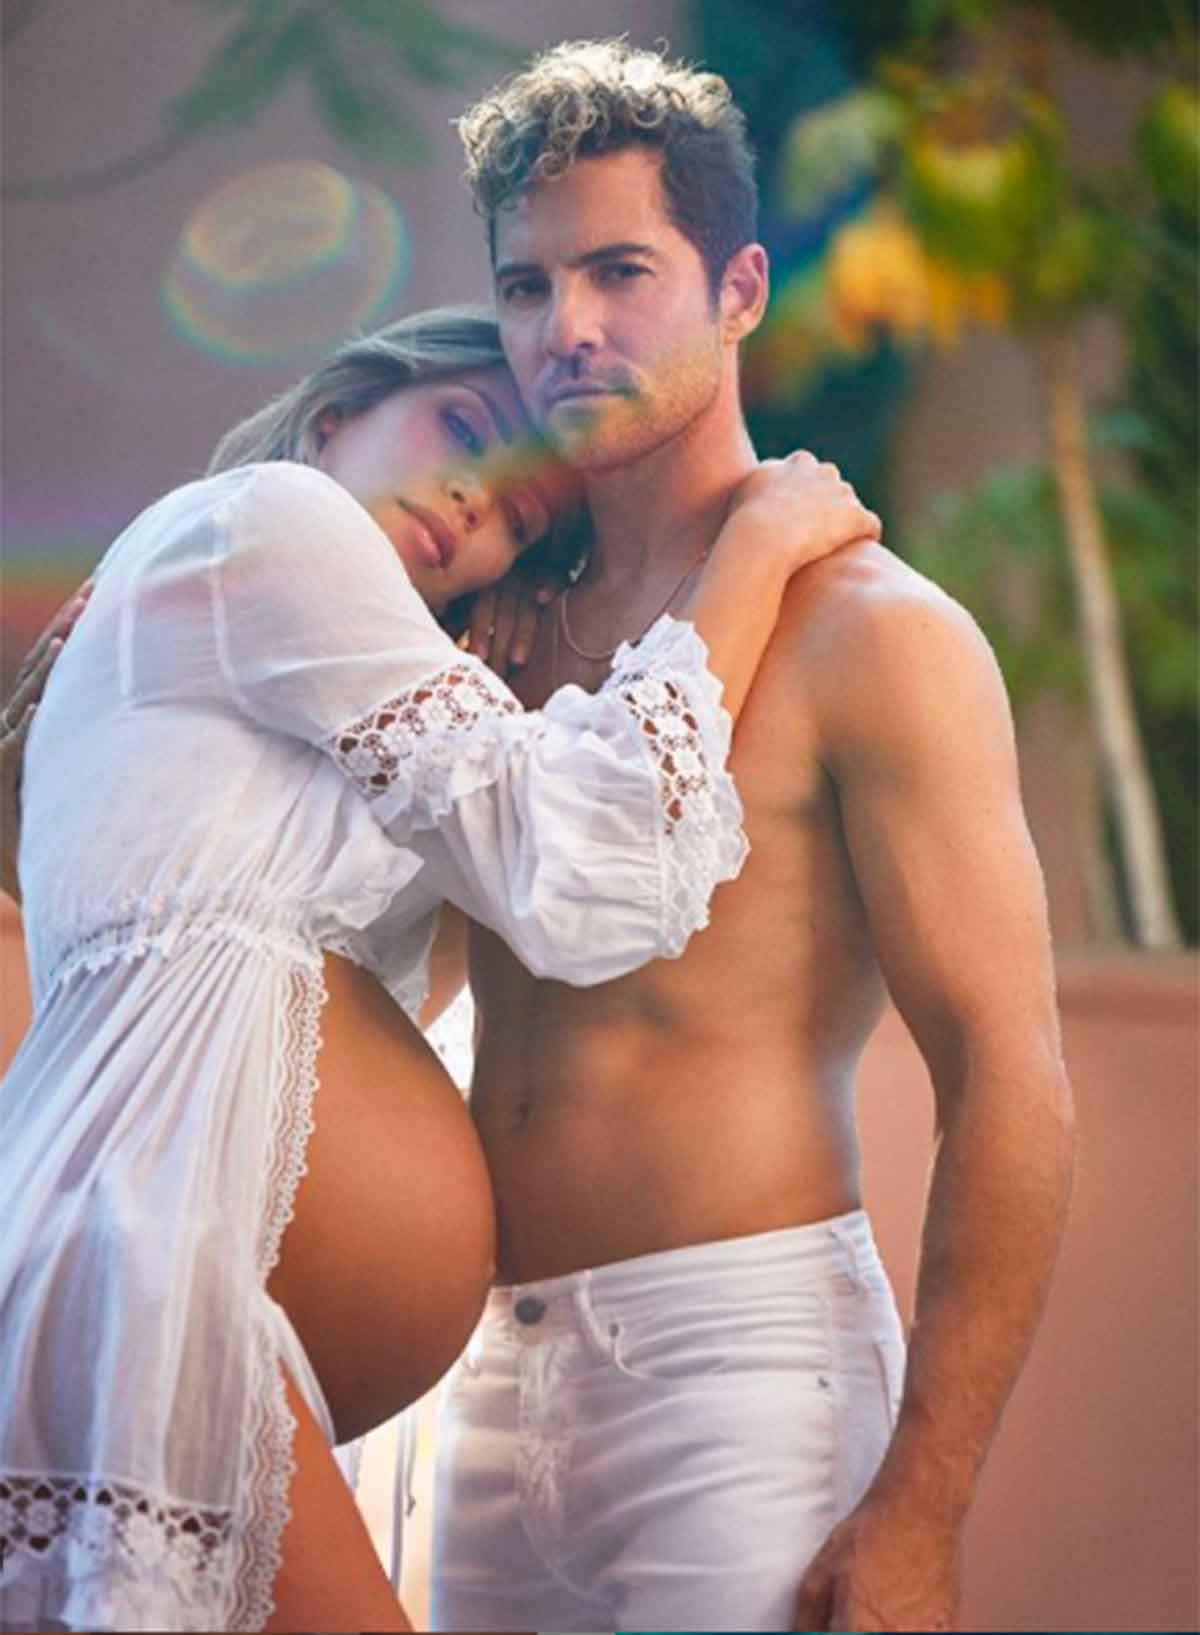 La bonita foto de David Bisbal y Rosanna Zanetti a falta de unos días de dar a luz